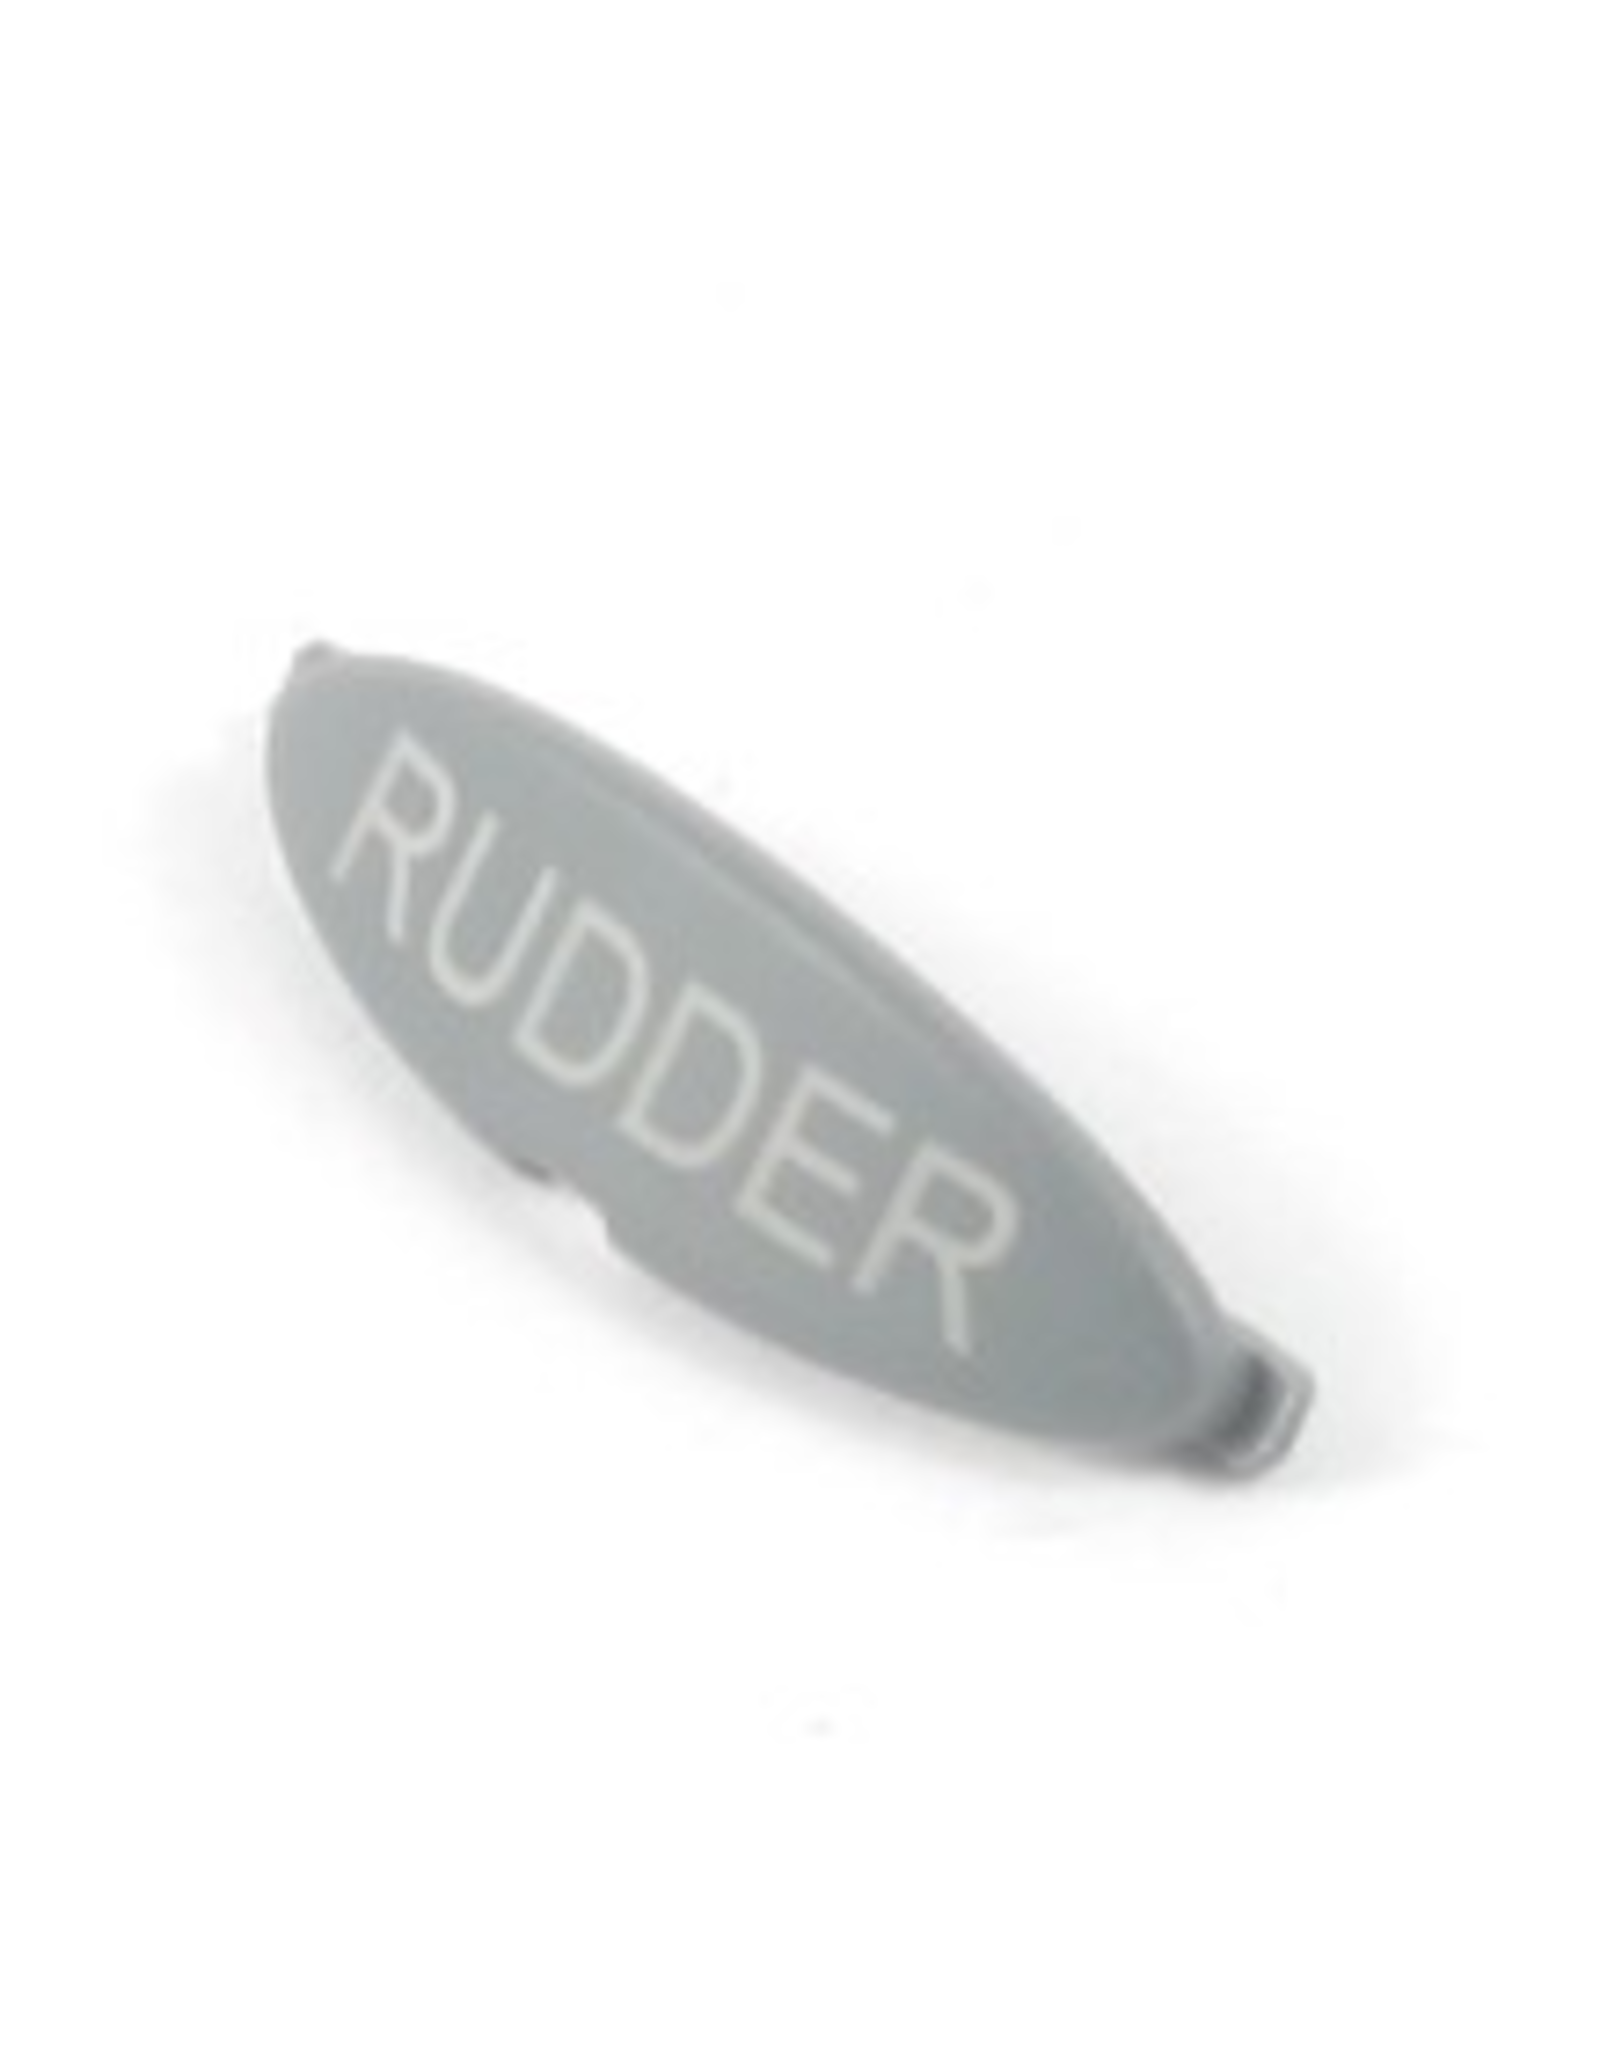 Hobie Hobie Handle Cap - "Rudder" - X-53